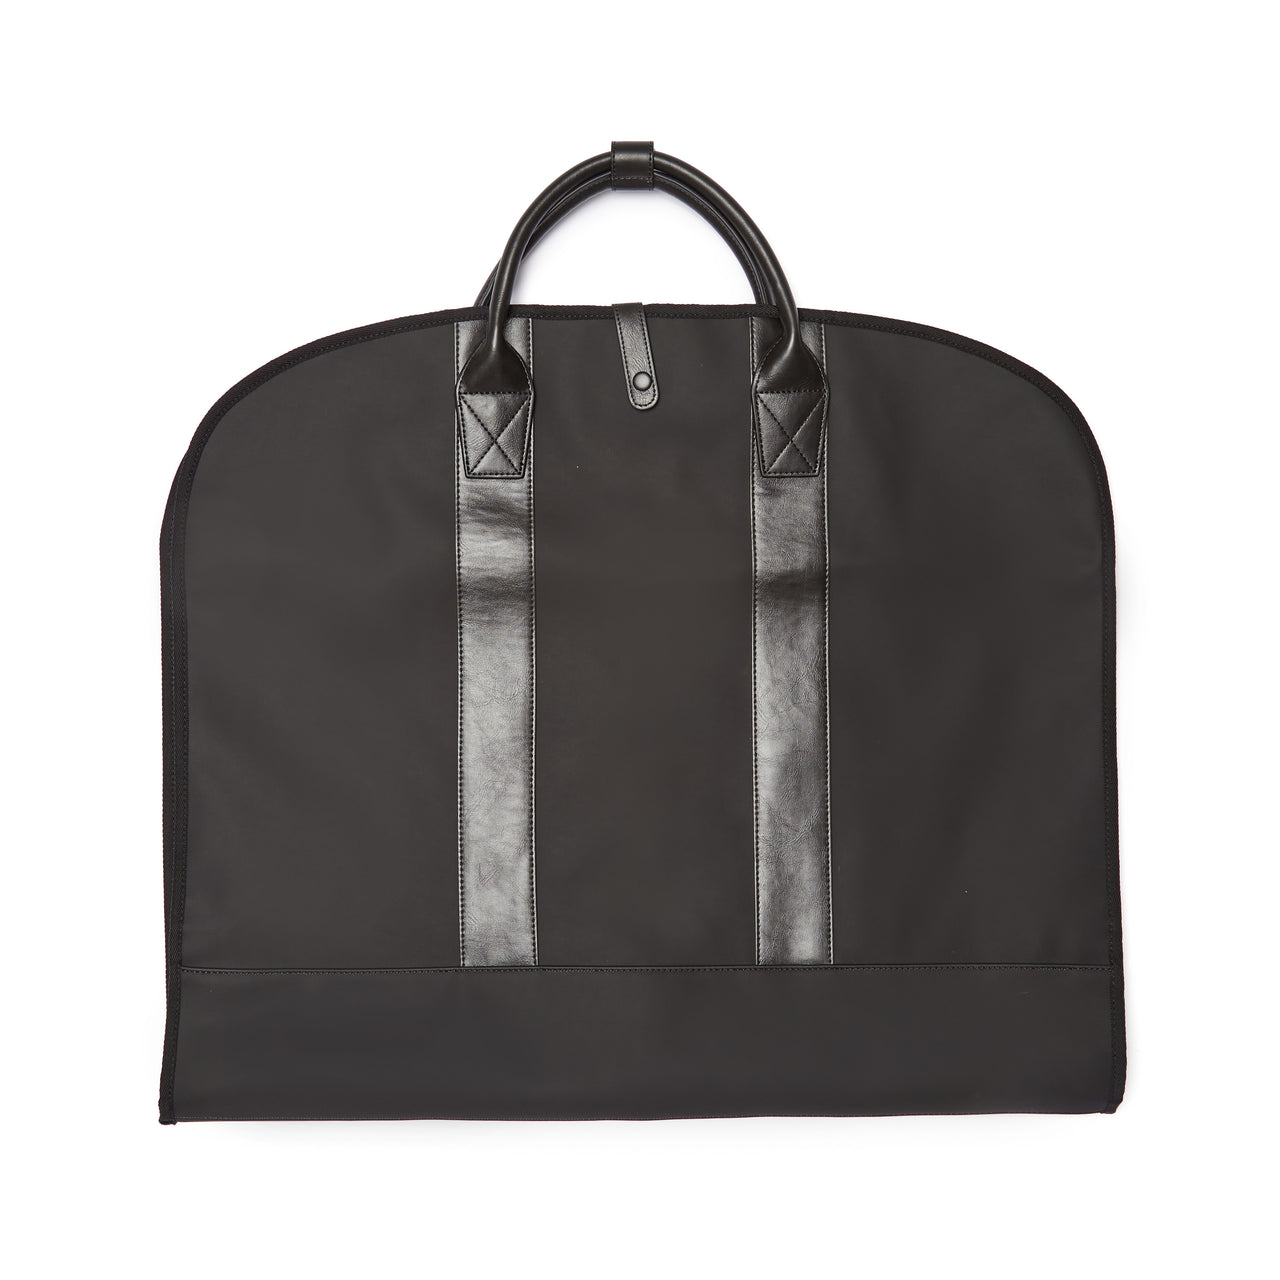 Brouk & Co Giftware Hudson Garment Bag (Black)